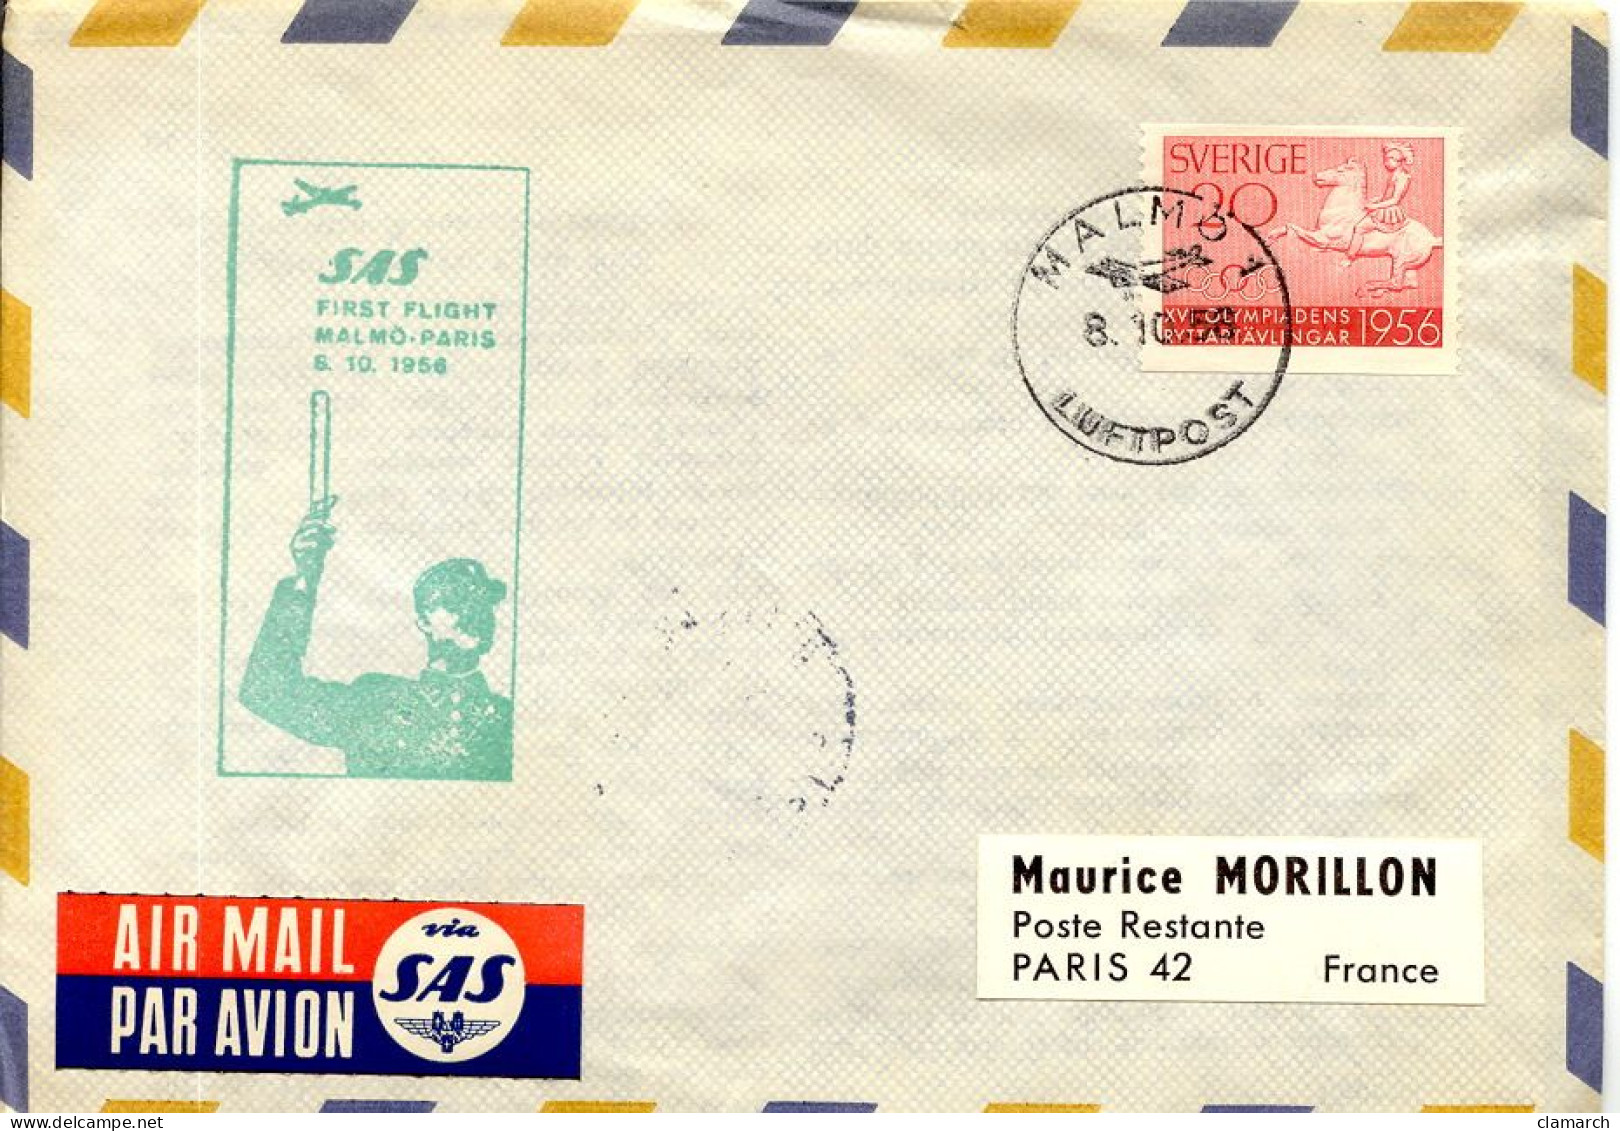 Aérophilatélie-SAS First Flight MALMO-PARIS 8.10.1956-cachet De Malmo Du 8.10.56 - First Flight Covers